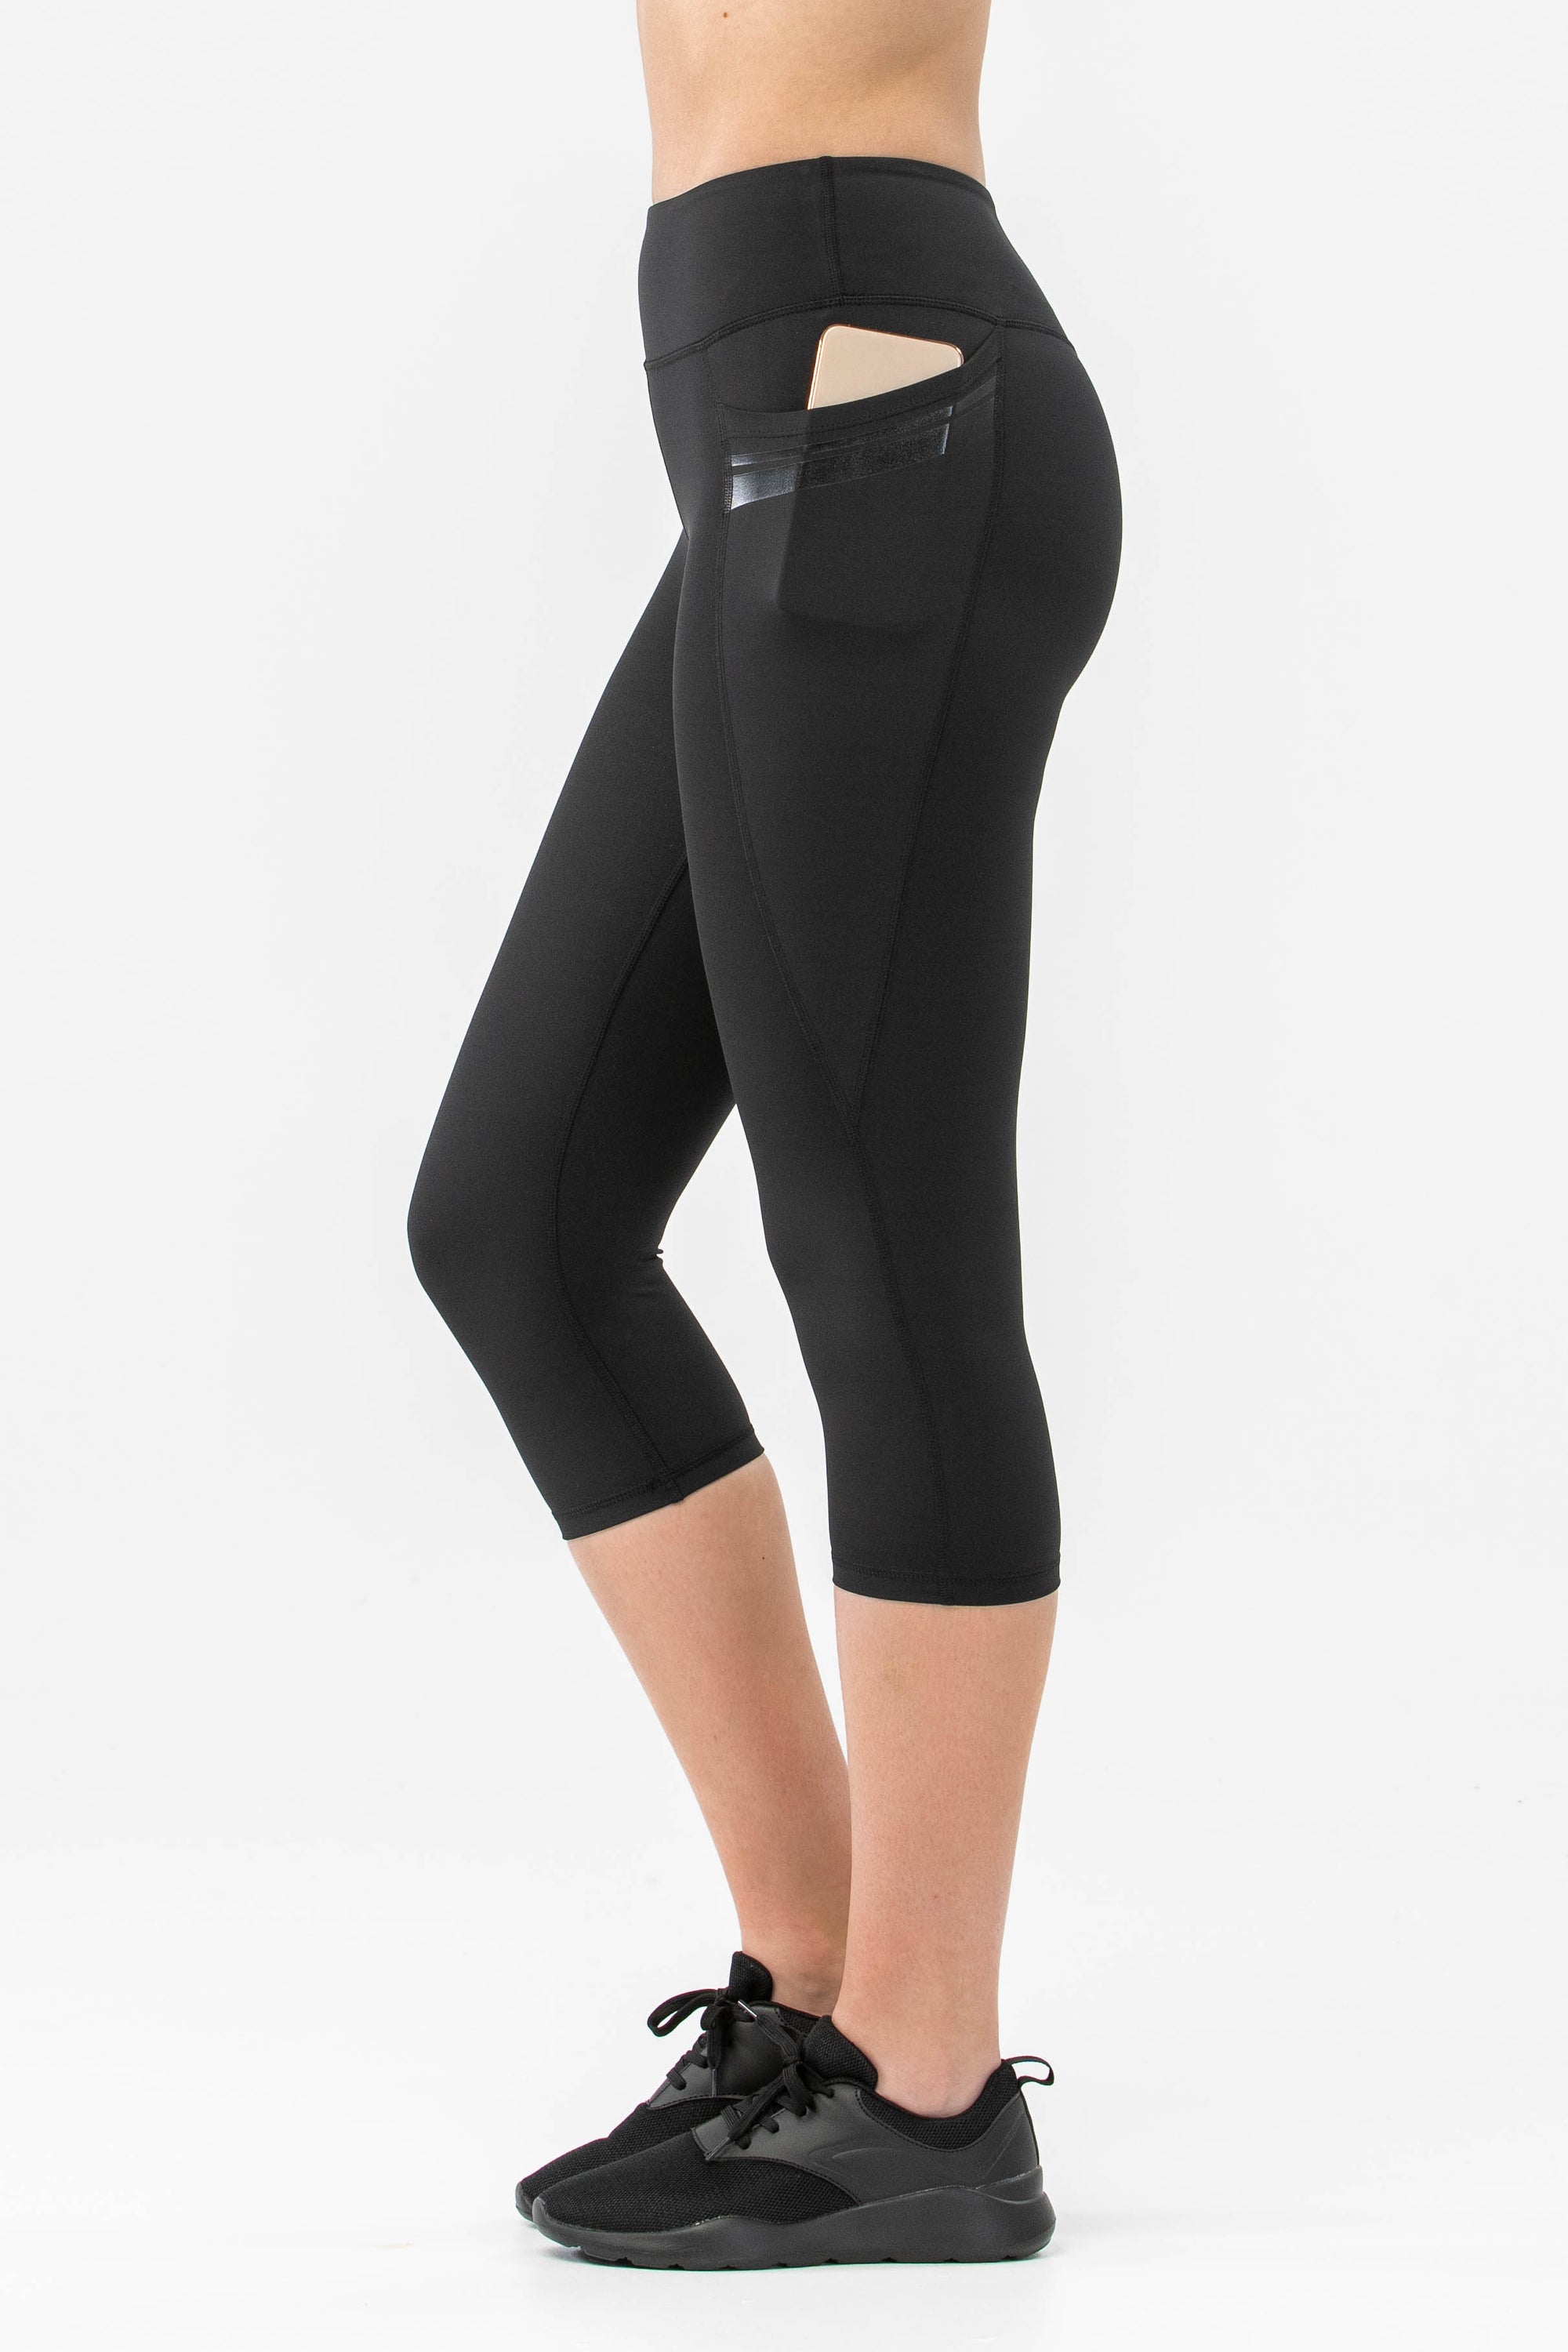 squat 100% fitphyt proof leggings High Womens - Leggings | Waisted